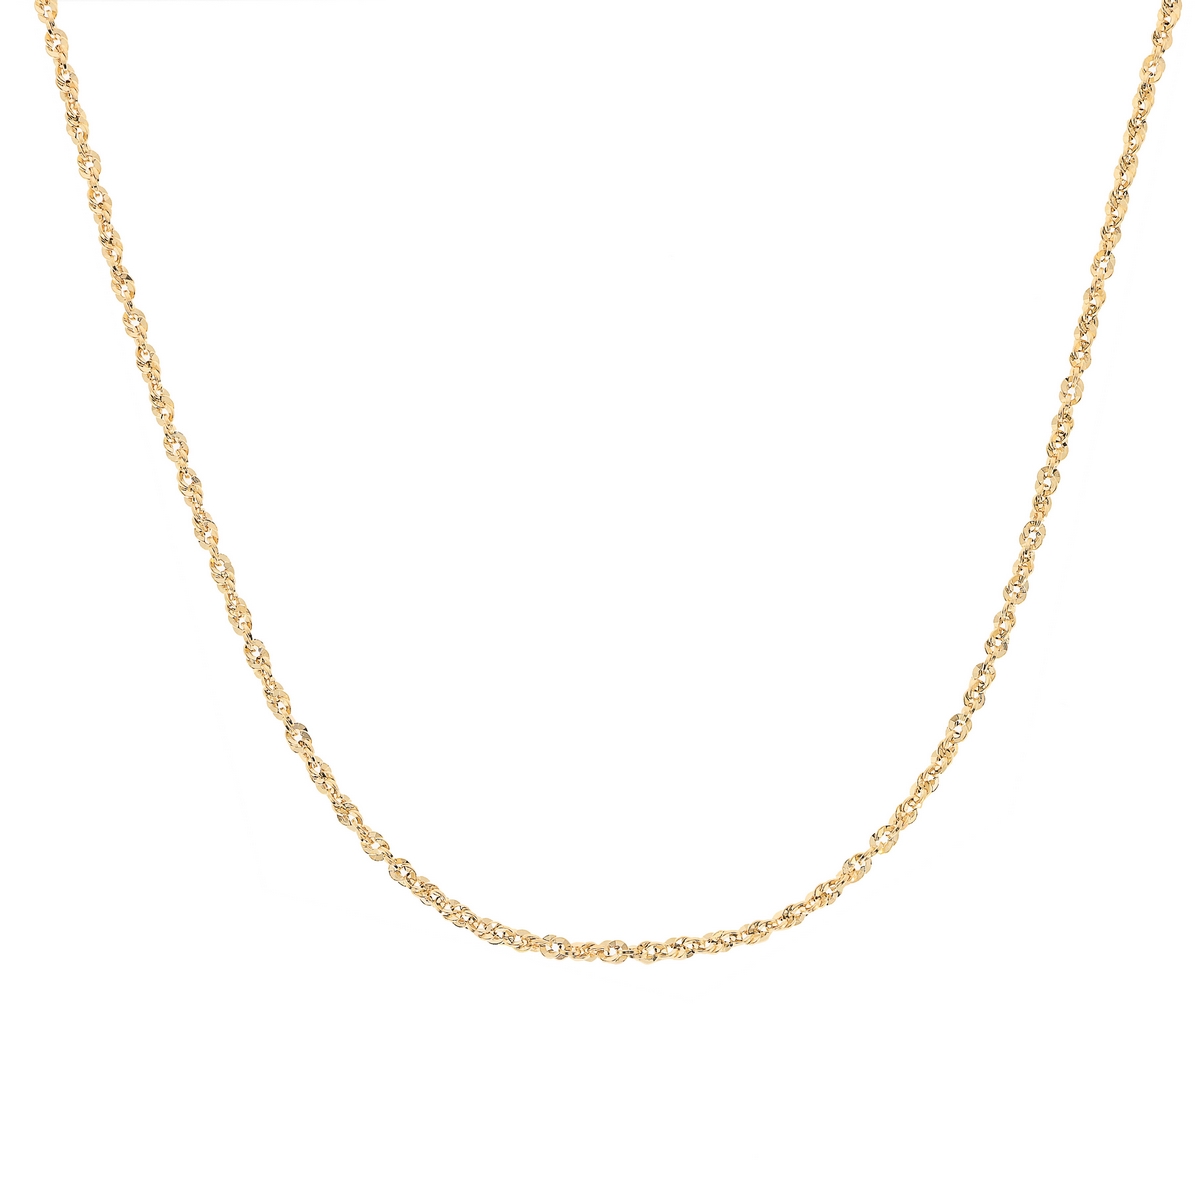 Złoty łańcuszek irydia 50 cm złoto próby 585 (2.62g)